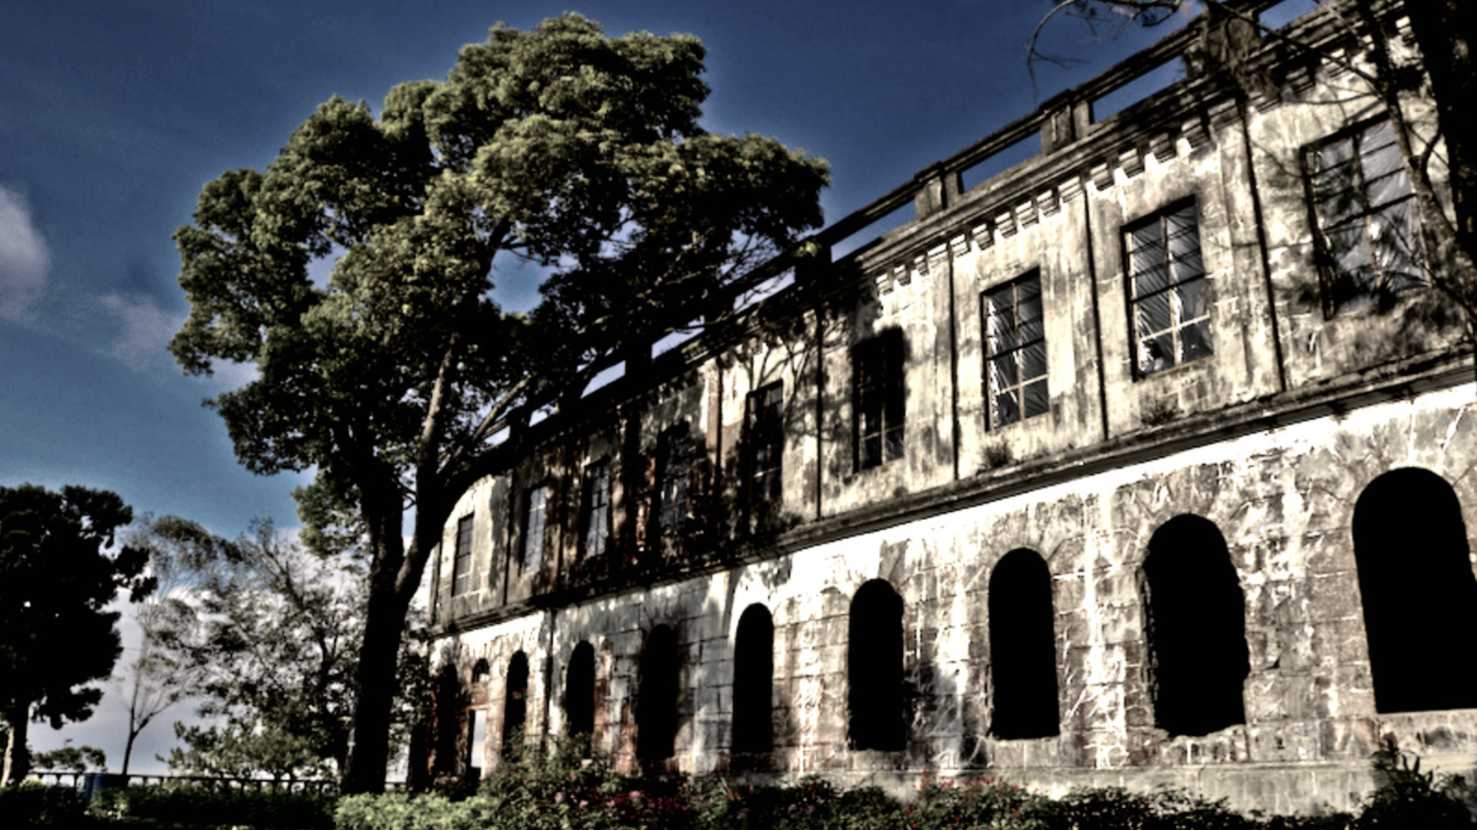 Câu chuyện lạnh thấu xương đằng sau khách sạn Diplomat ở thành phố Baguio, Philippines 1